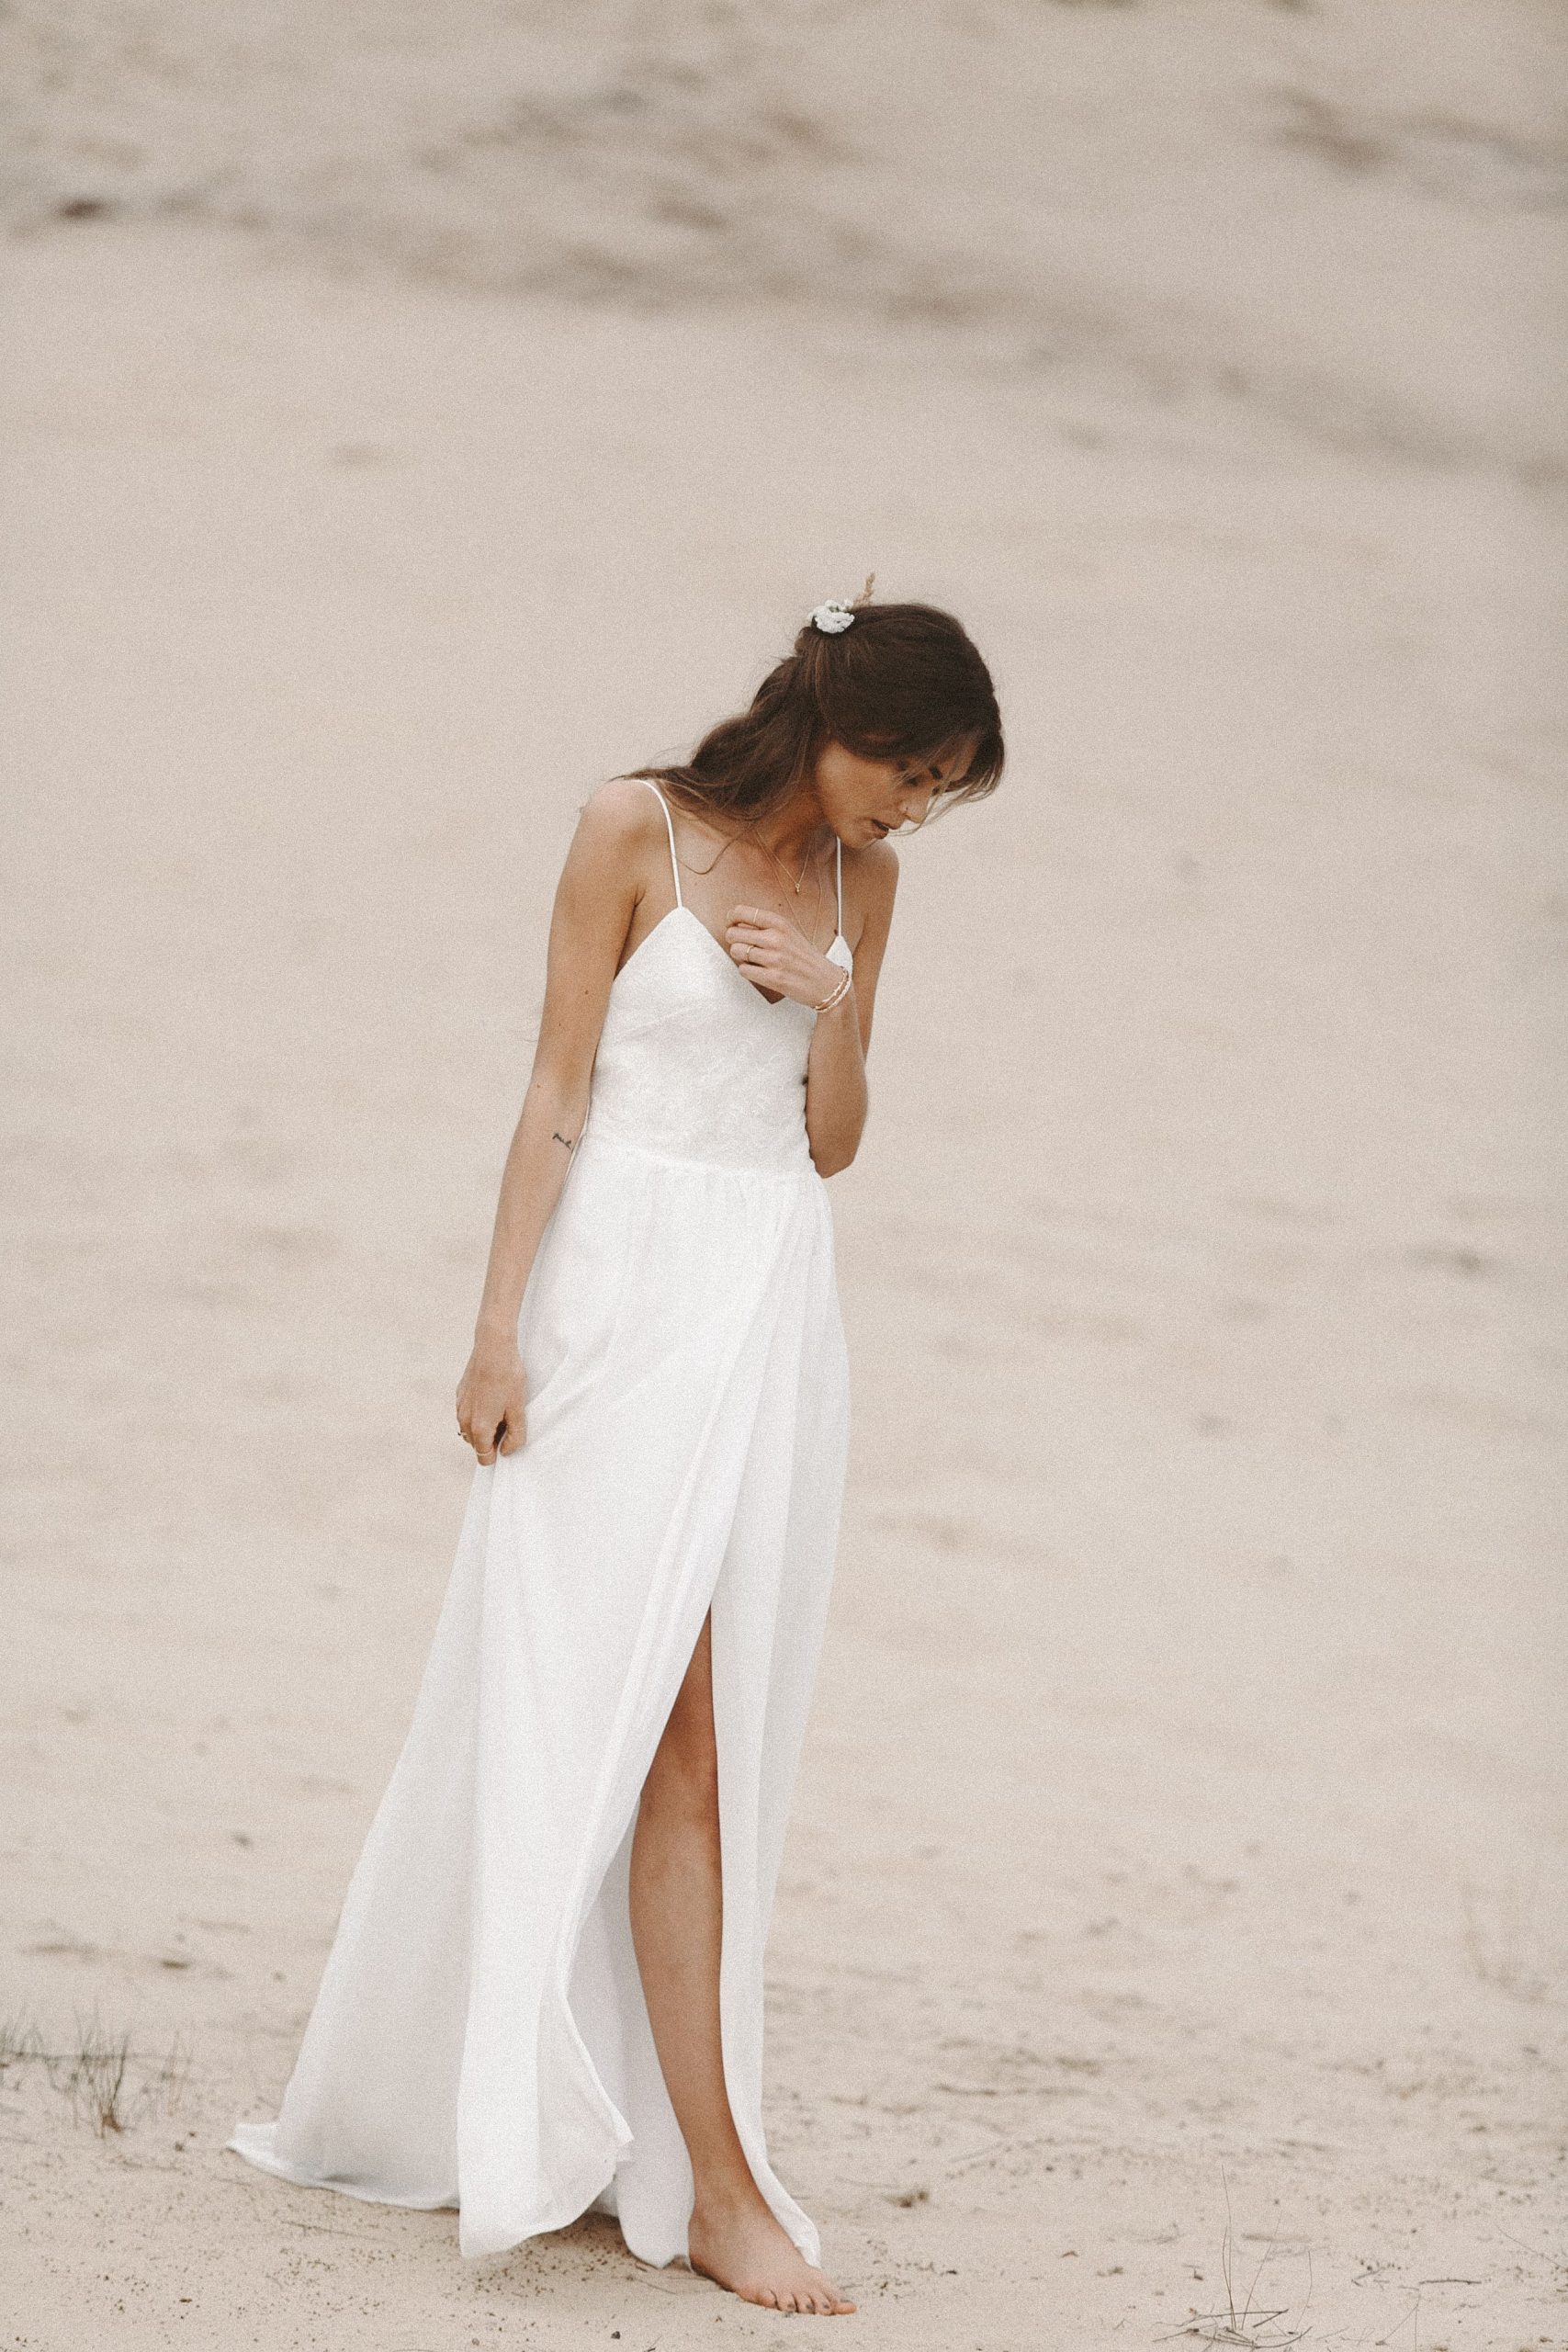 Strandhochzeit Brautkleid Fliessendes Hochzeitskleid Aus